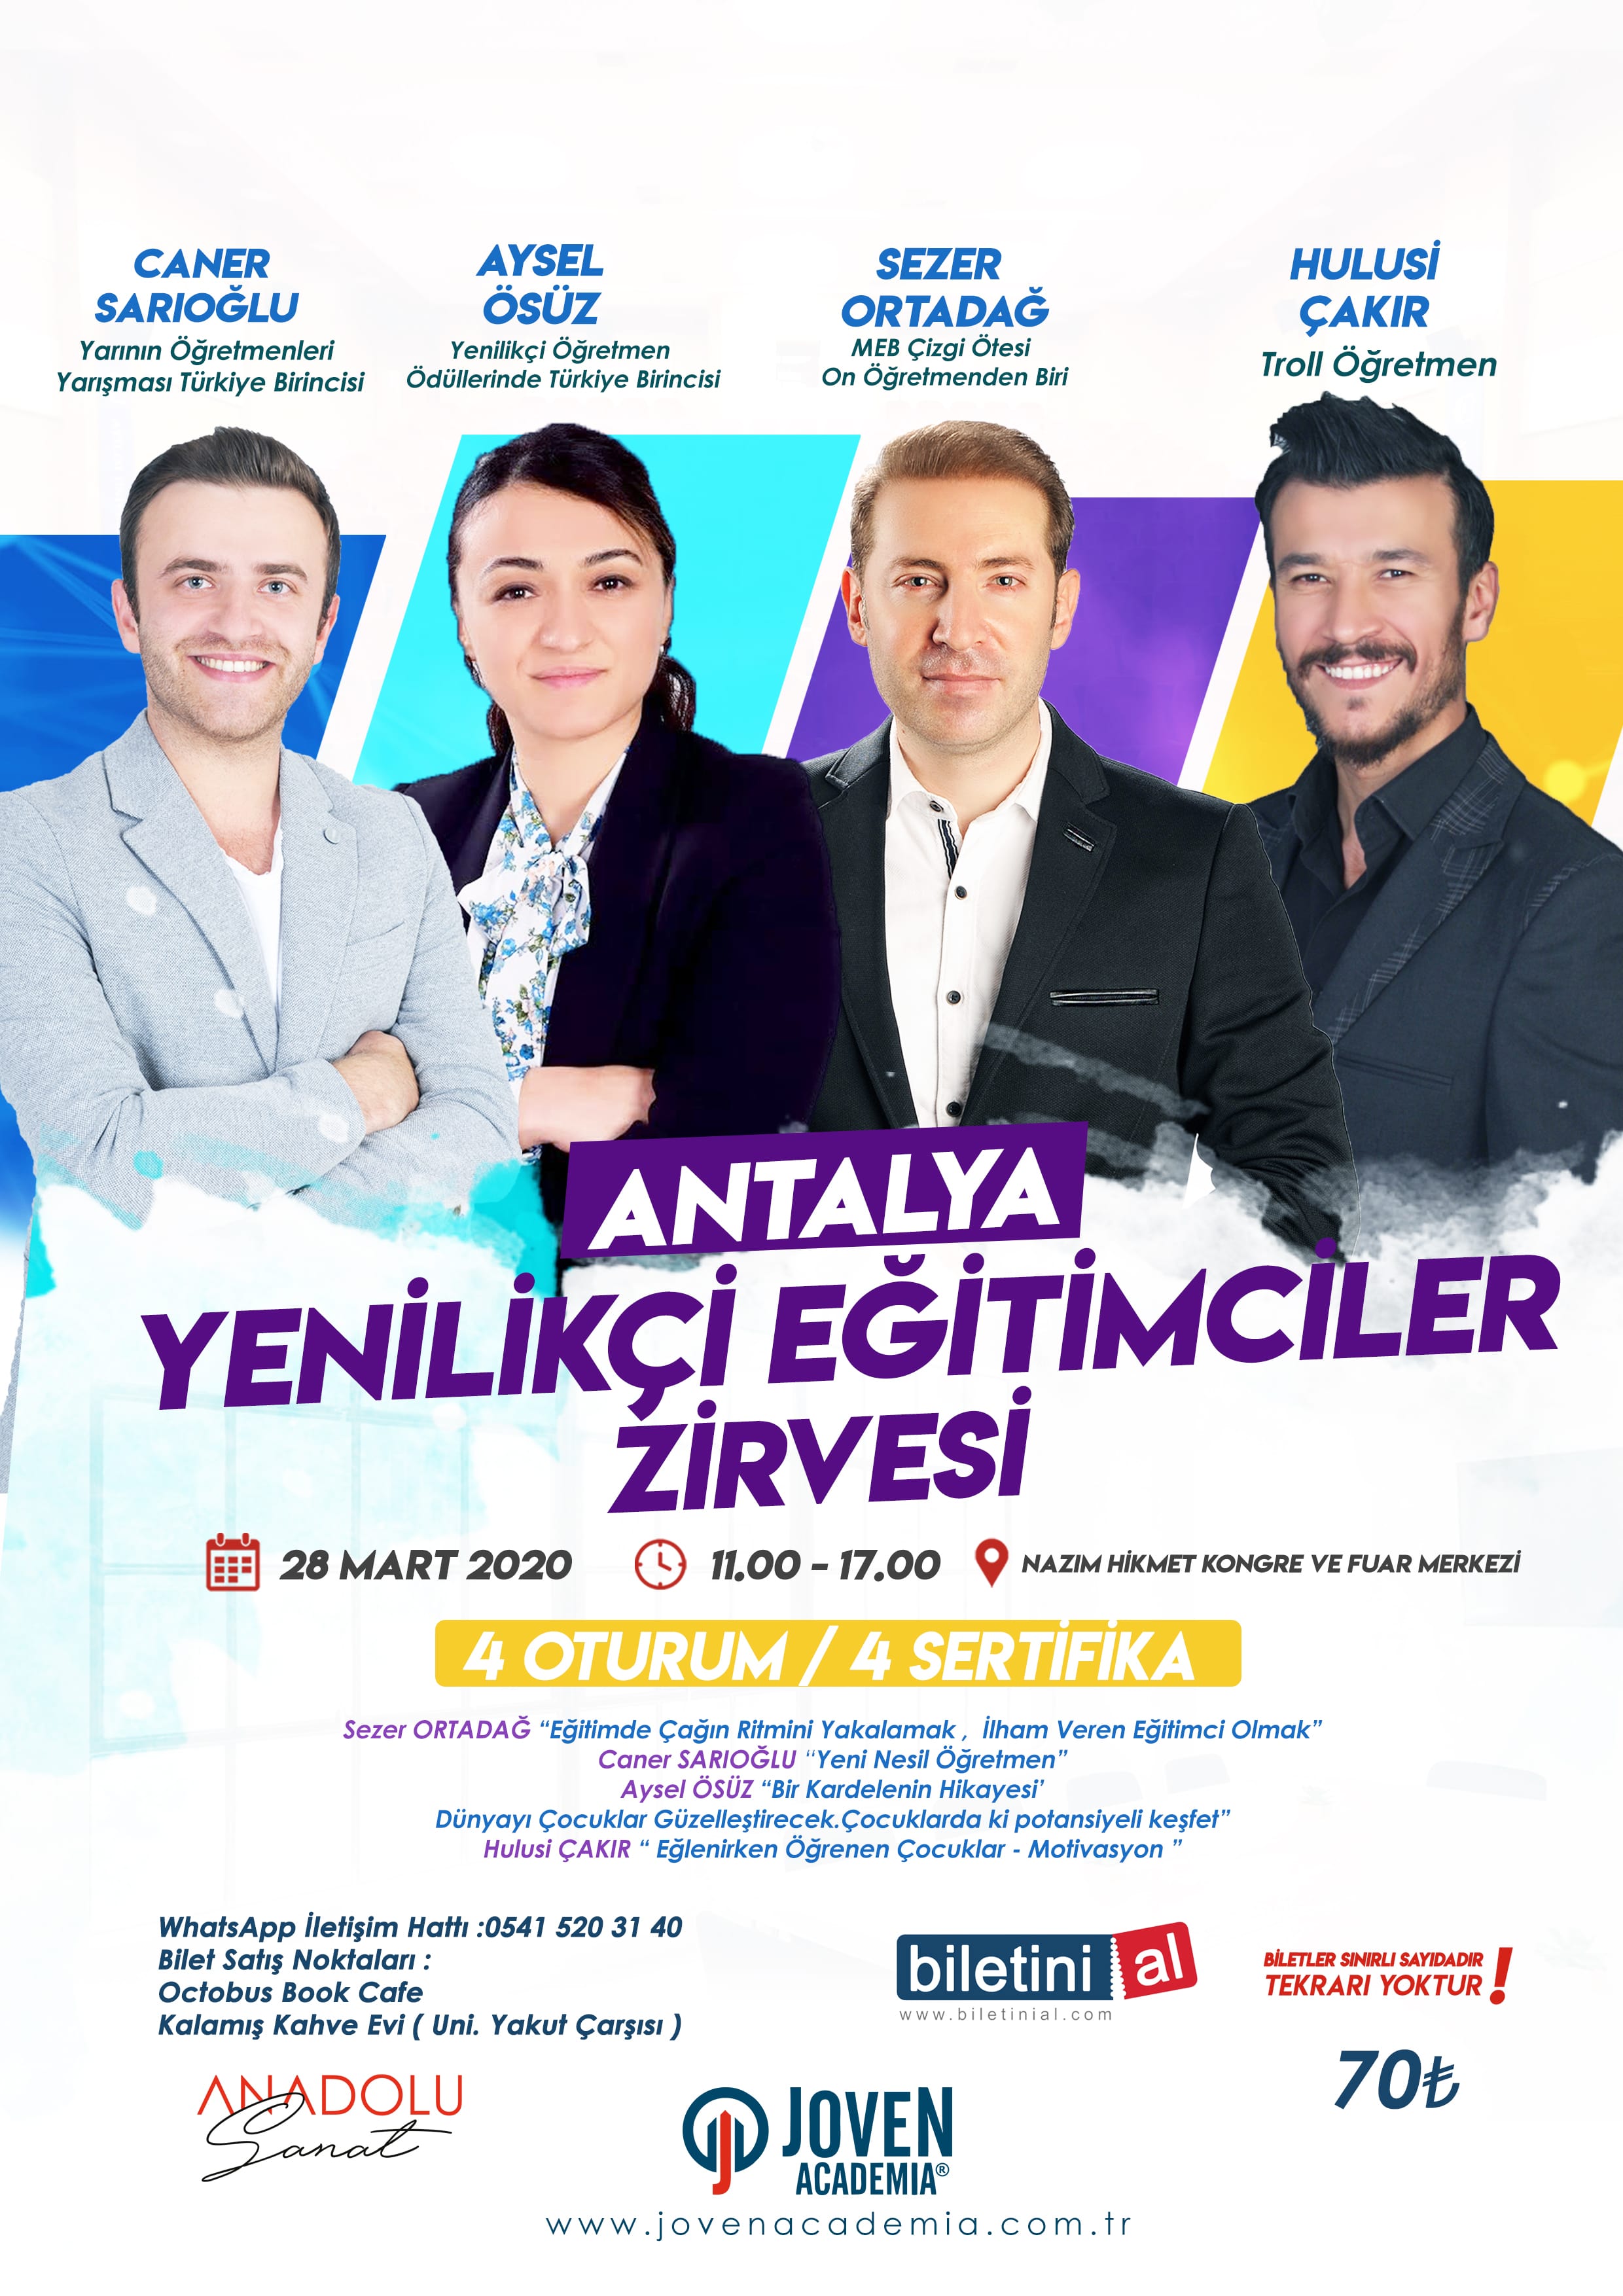 Antalya Yenilikçi Eğitimciler Zirvesi